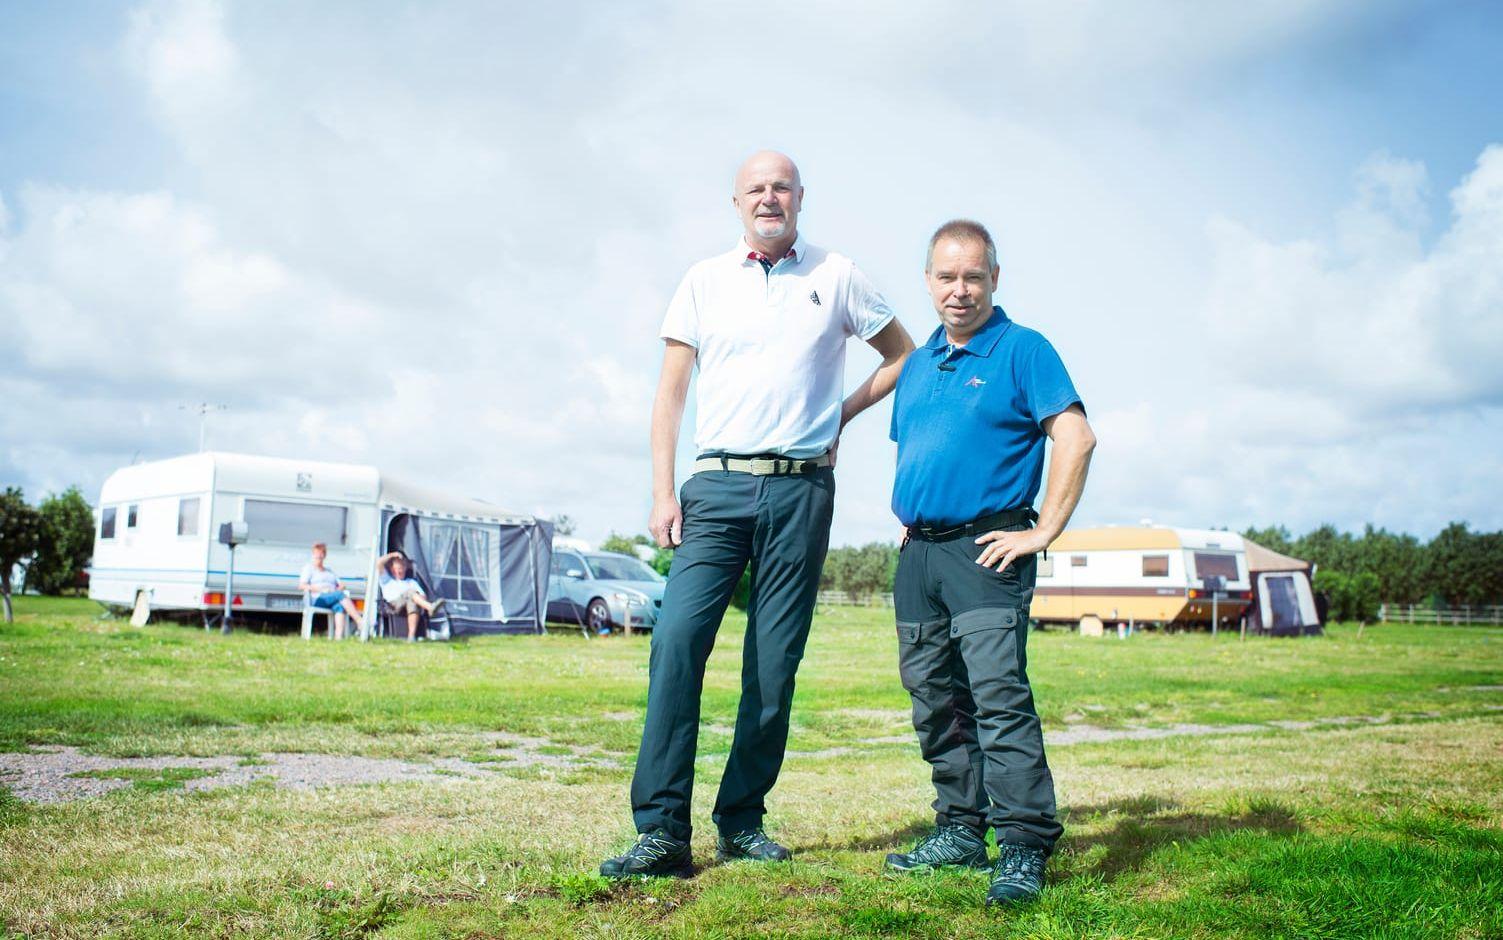 Nytt ledarskap. Pär Dalevik är vd och Glenn T Unger är platschef för Olofsbo camping sedan nylanseringen under sommaren 2017. – Det känns stimulerande, säger Pär Dalevik. Bild: Jonatan Bylars